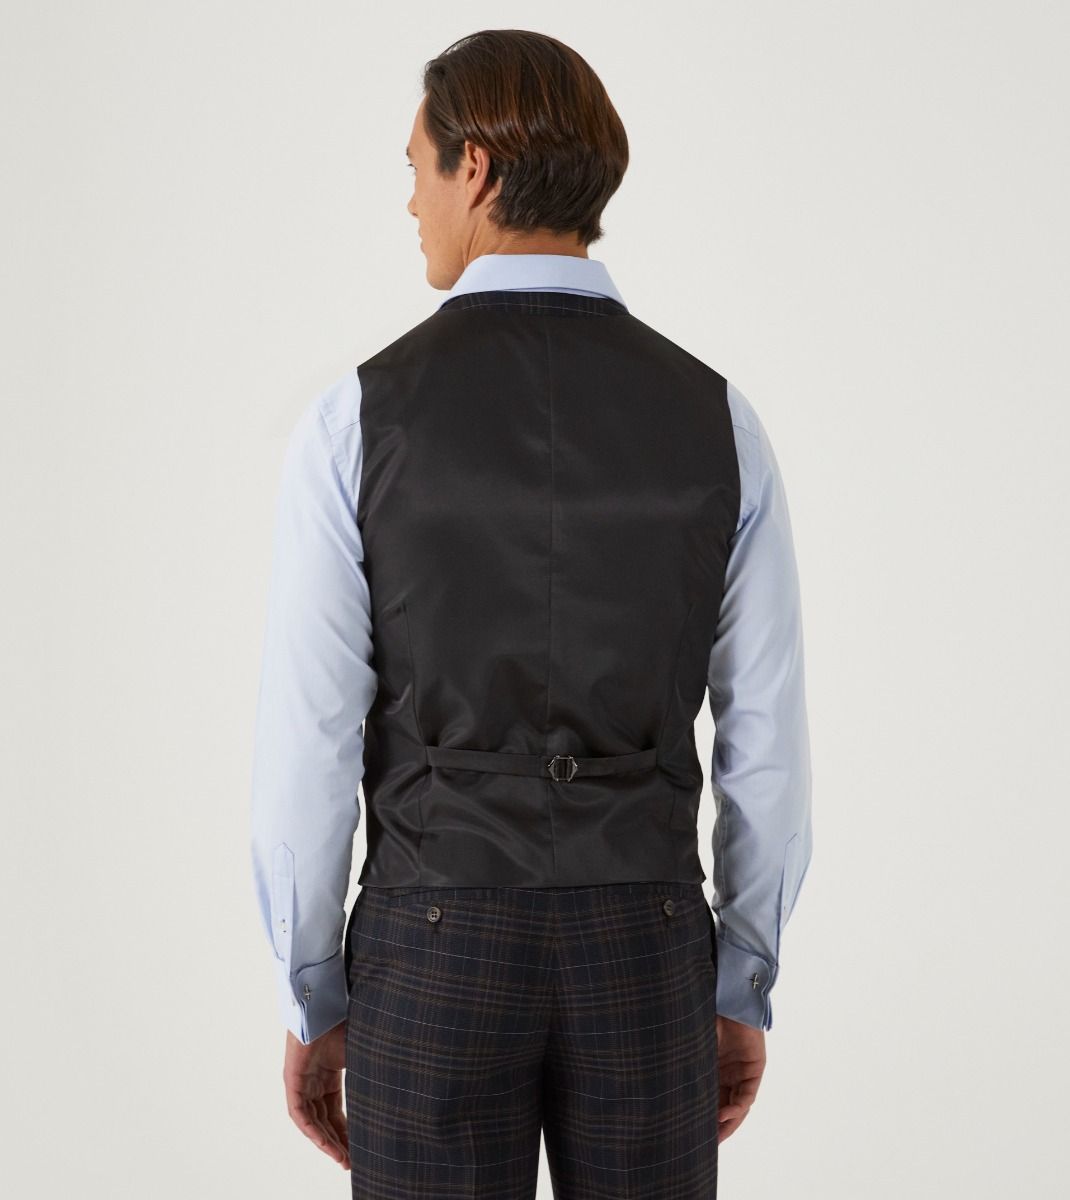 Alton Suit Black / Brown / Blue Check - Waistcoat